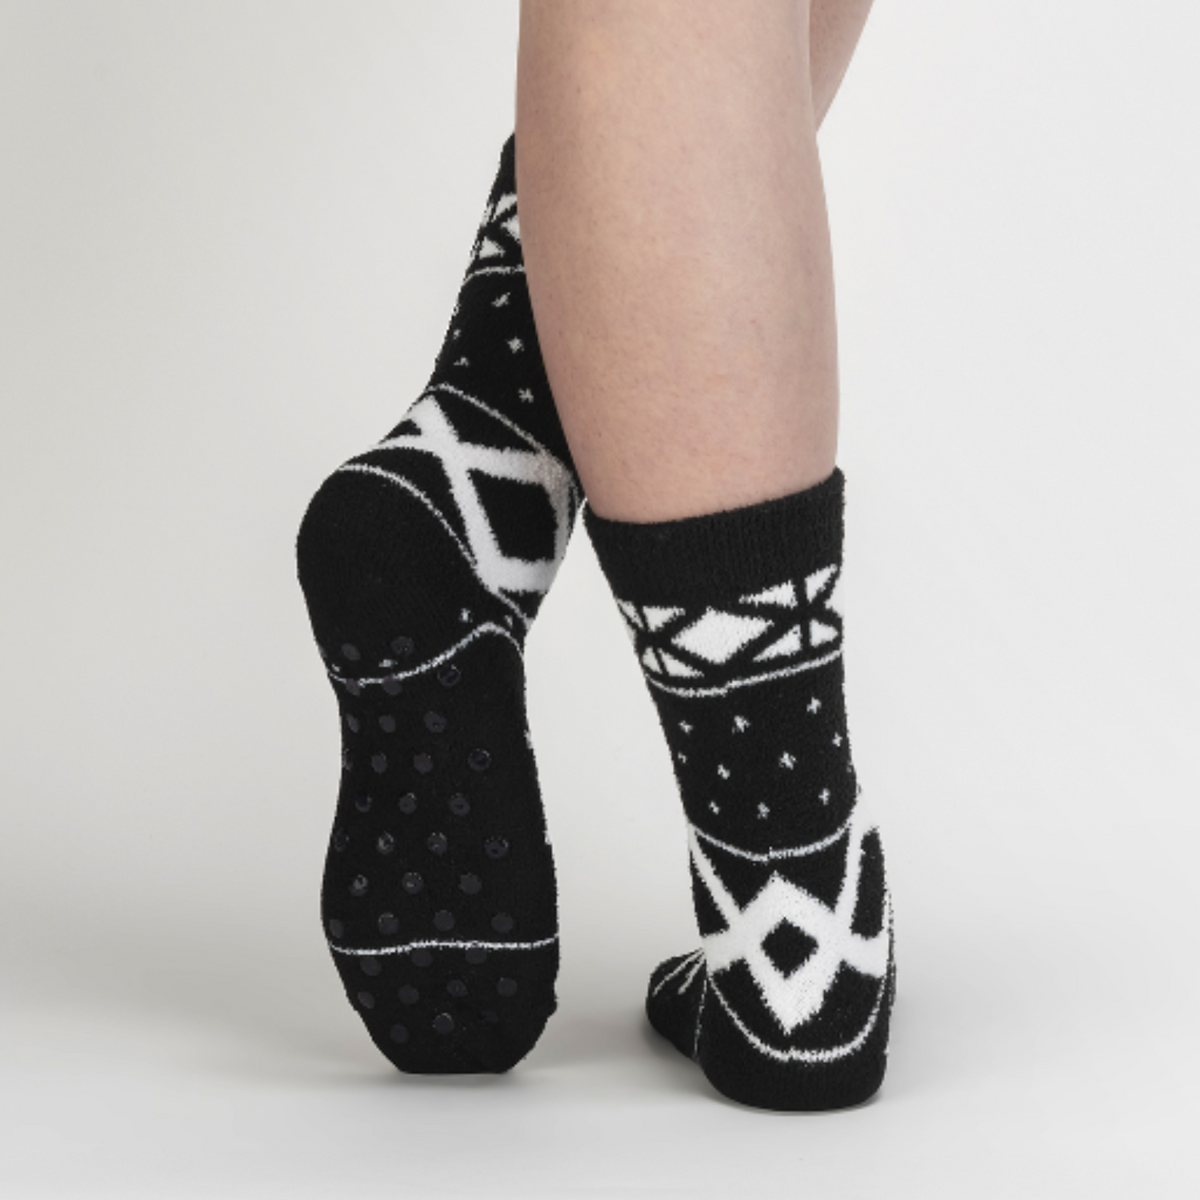 Sock It To Me You Sweater Believe It women&#39;s slipper sock featuring black fair isle pattern. Socks worn by model seen from behind showing bottom of sock.. 